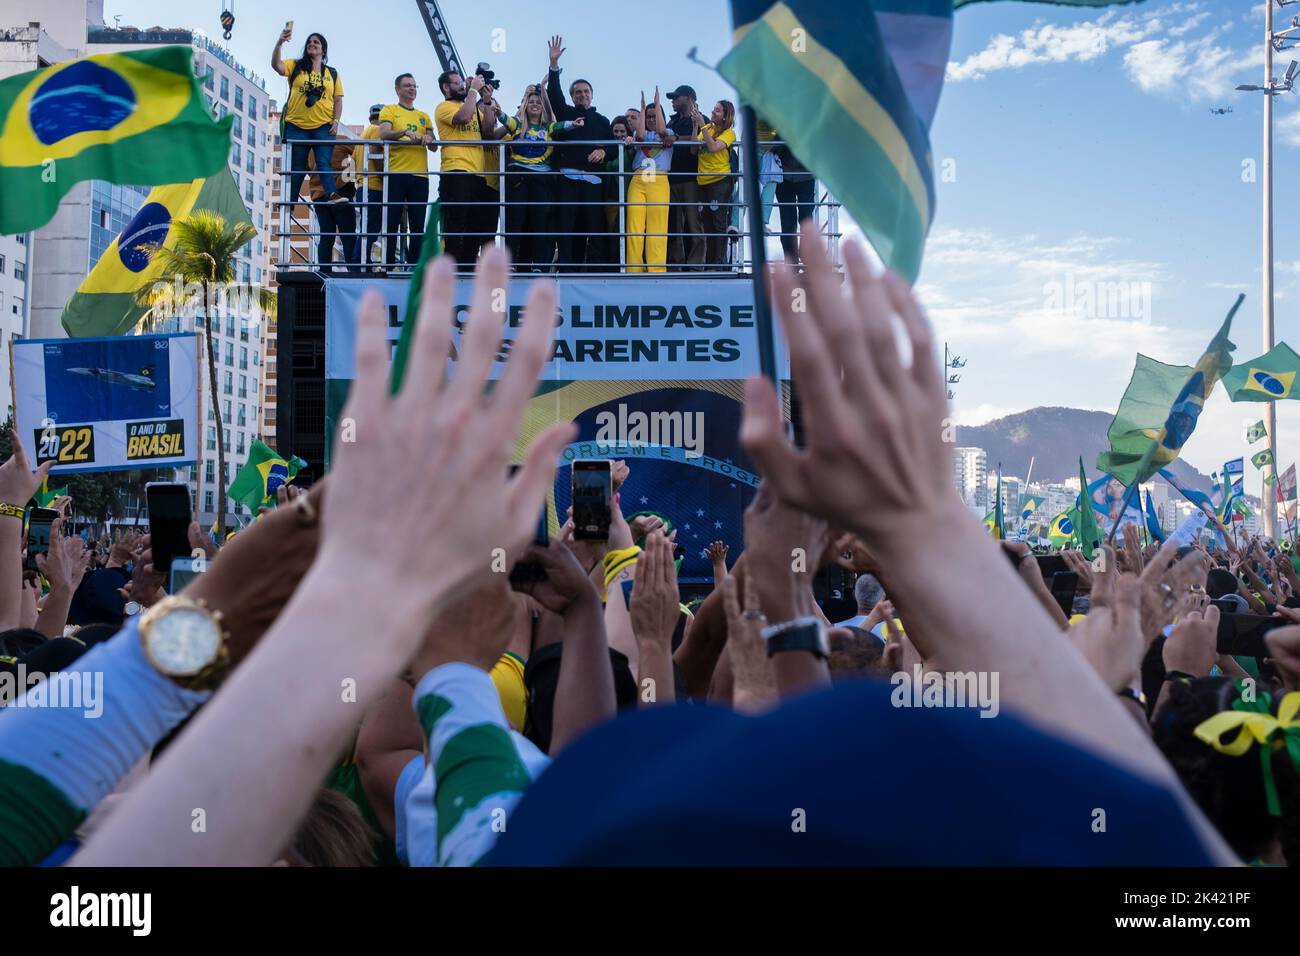 Le président brésilien et candidat à la réélection Jair Bolsonaro s'adresse à ses partisans lors d'un rassemblement politique sur la plage de Copacabana à la date de la célébration des 200 ans d'indépendance du Brésil. Banque D'Images